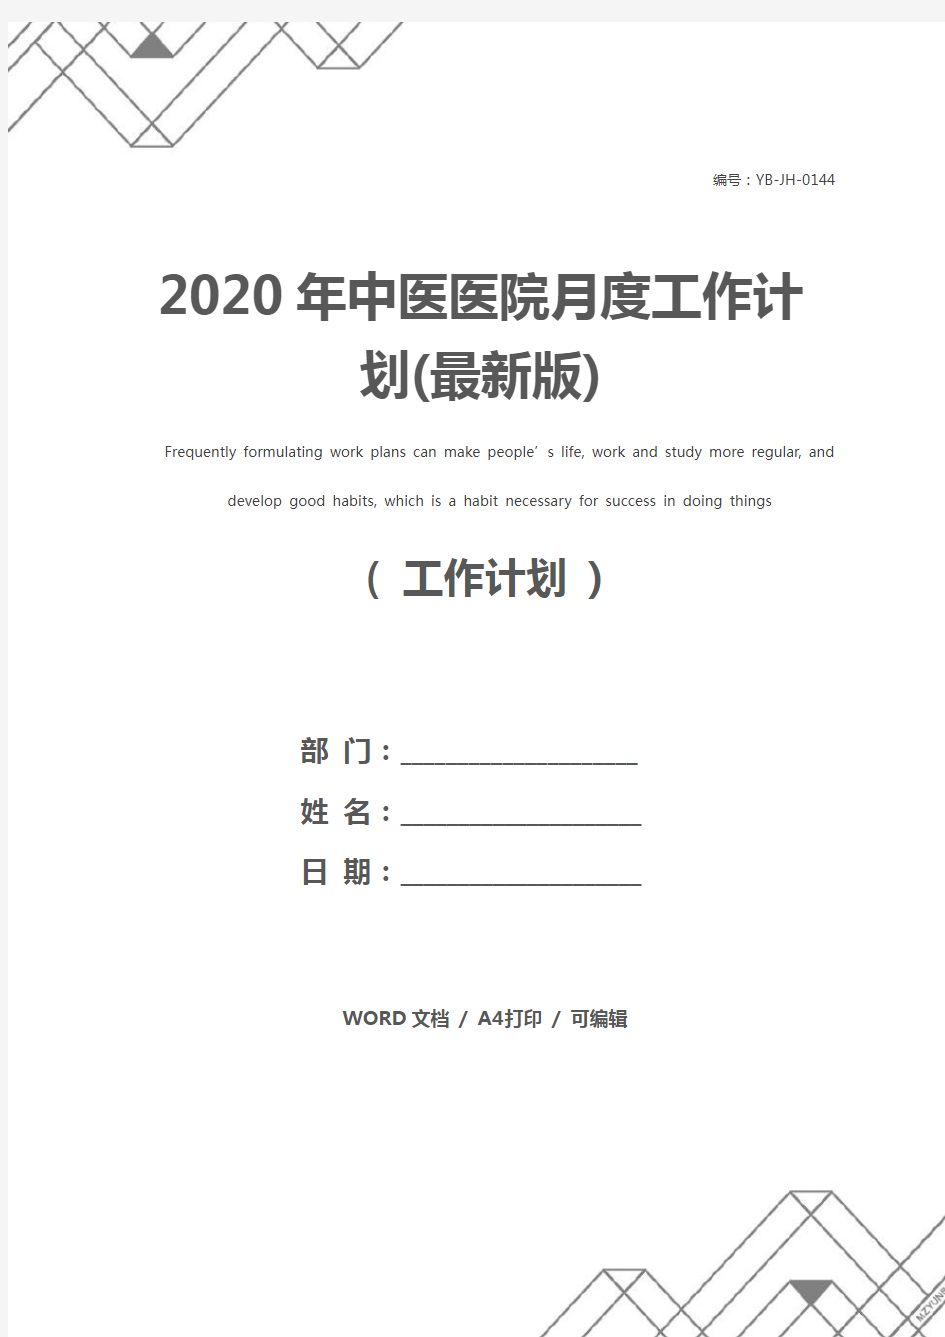 2020年中医医院月度工作计划(最新版)